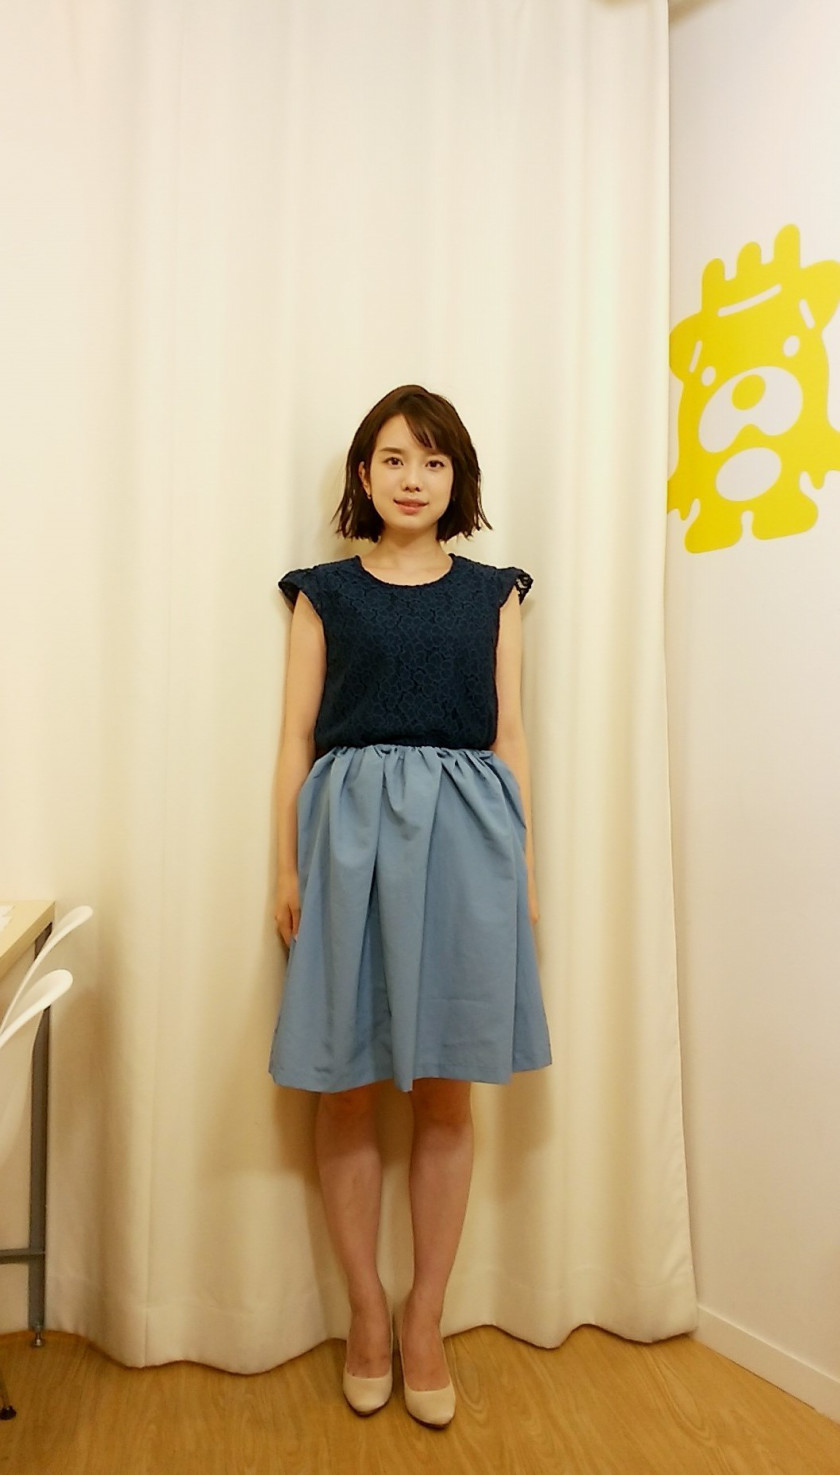 弘中綾香アナの全身衣装編 青系の服がめちゃくちゃ似合う 紺のノースリーブ 水色のスカート あげてけ